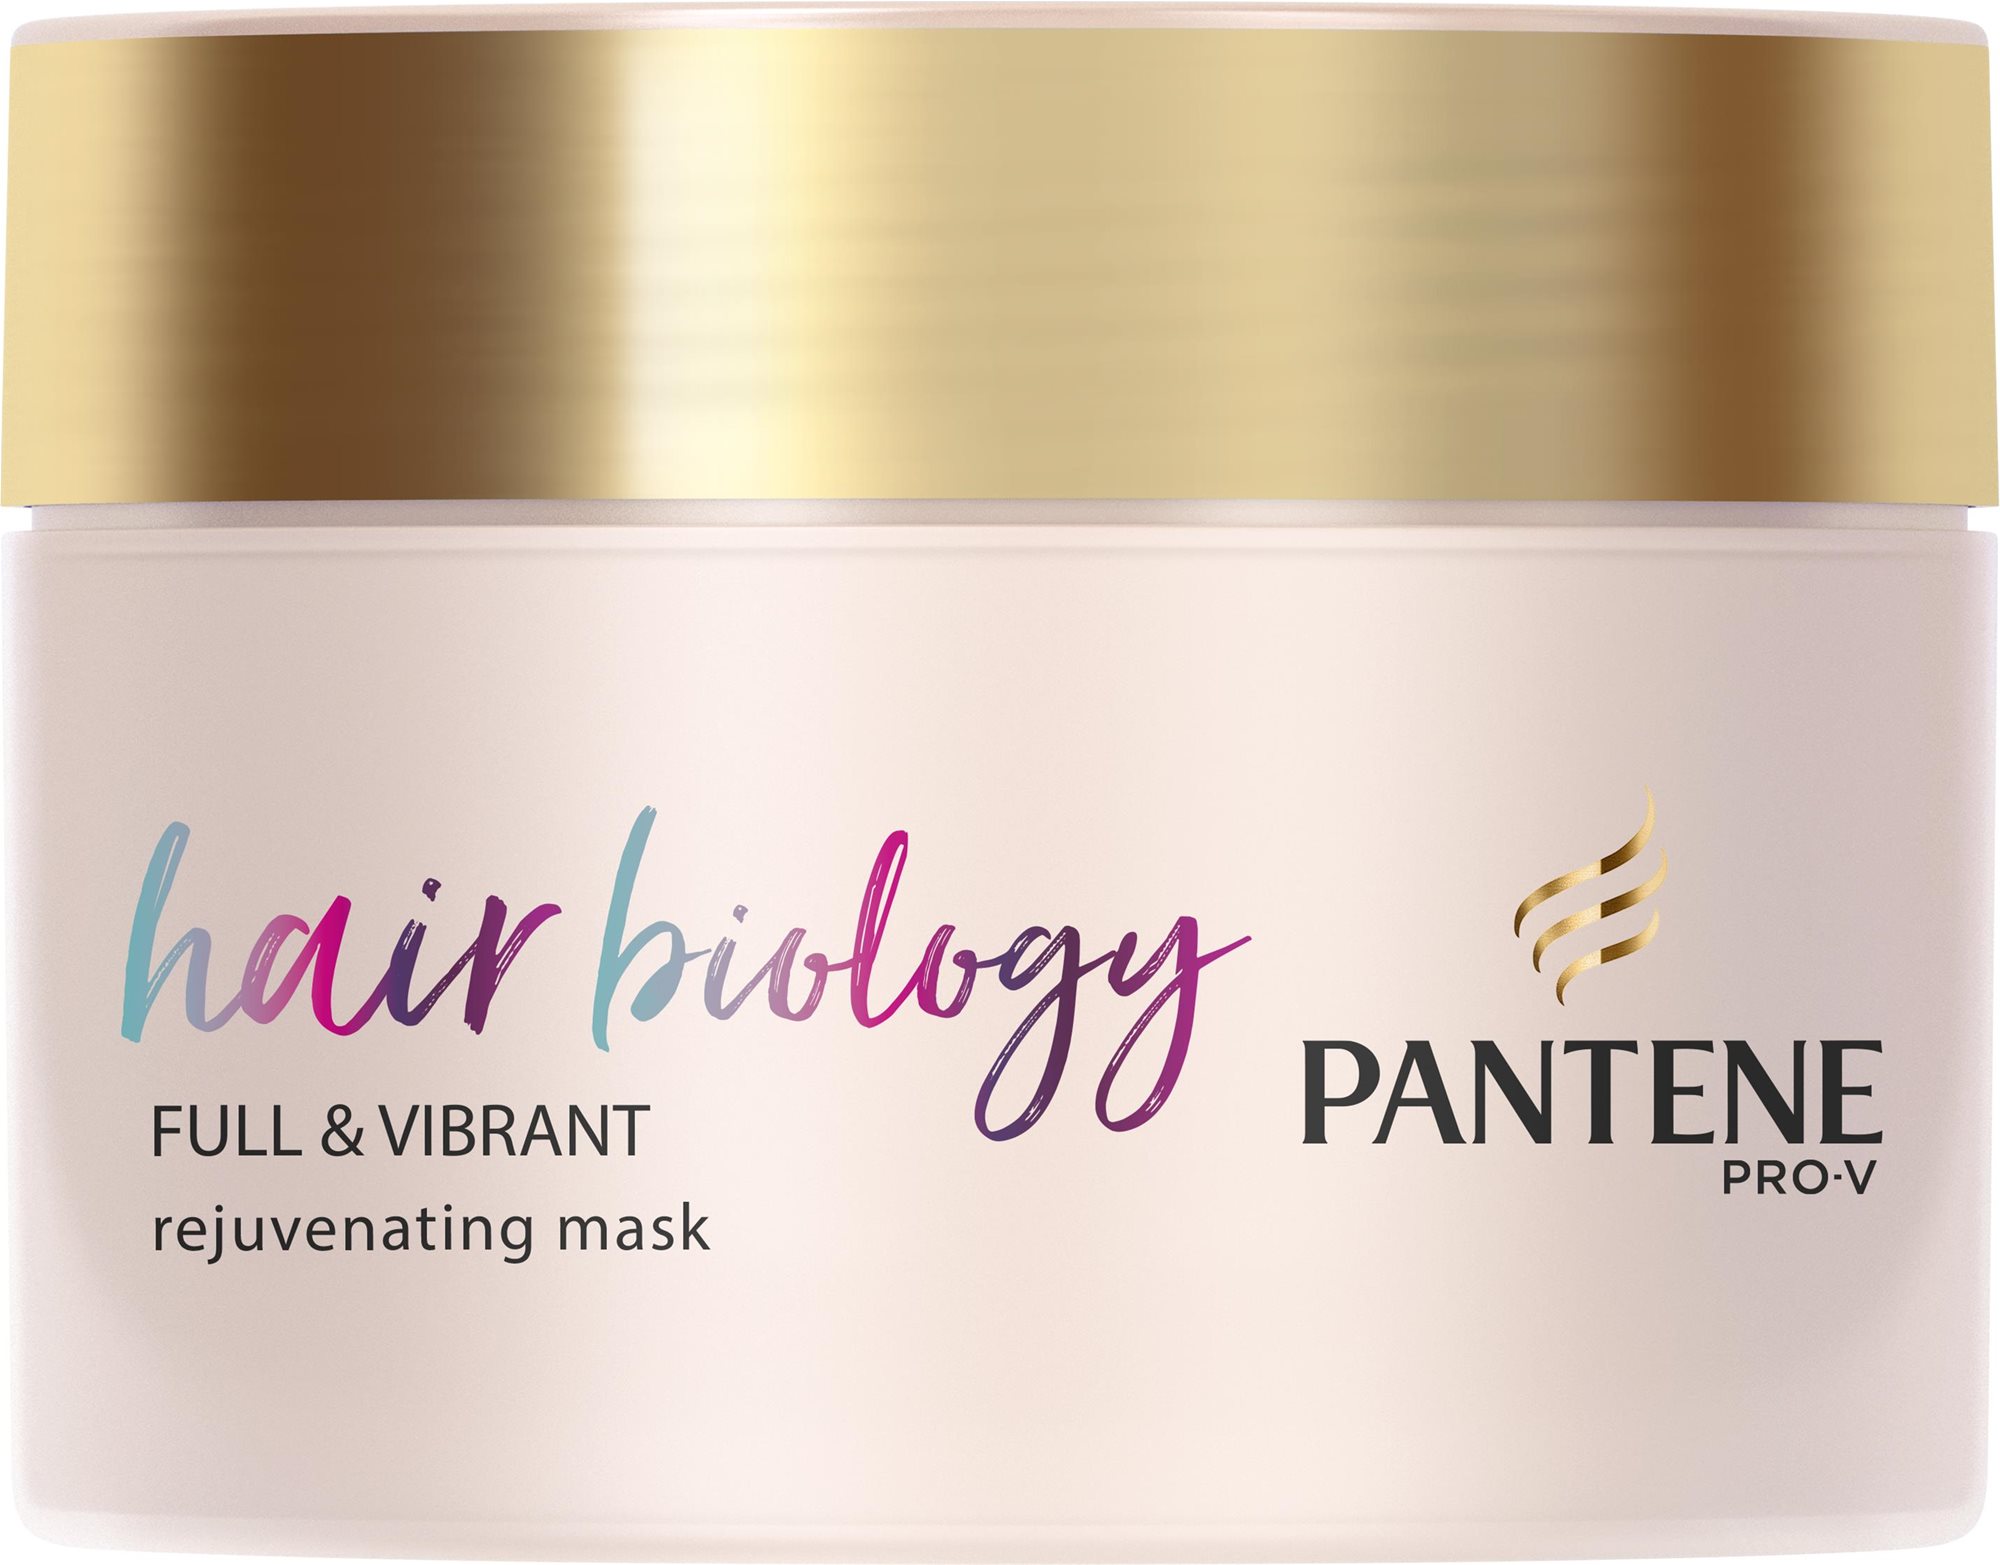 Hajpakolás PANTENE Hair Biology Full & Vibrant Maszk 160 ml